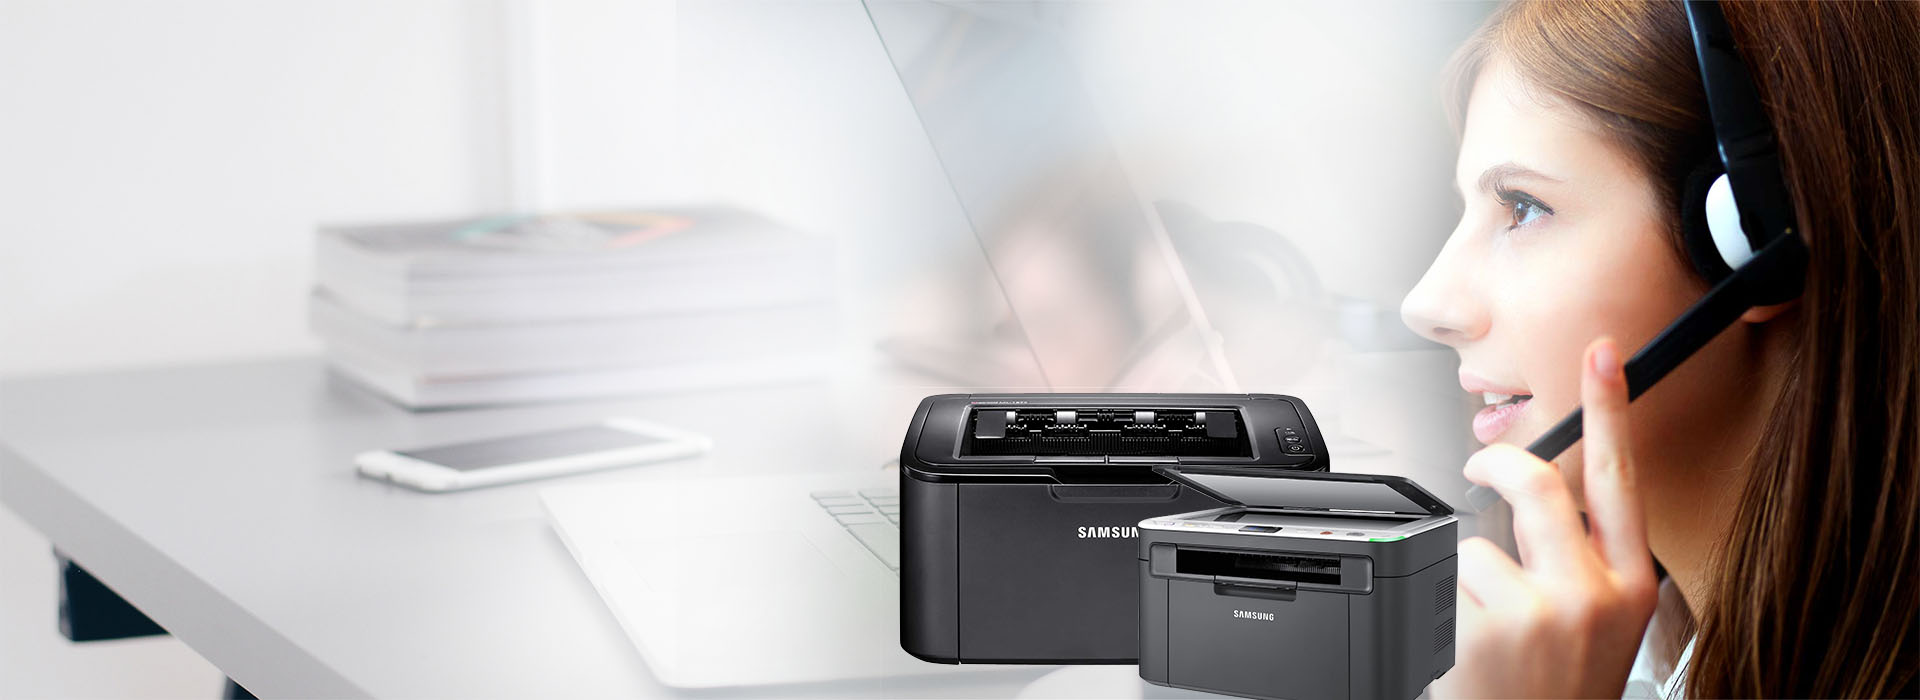 Samsung Printer - Samsung and Setup